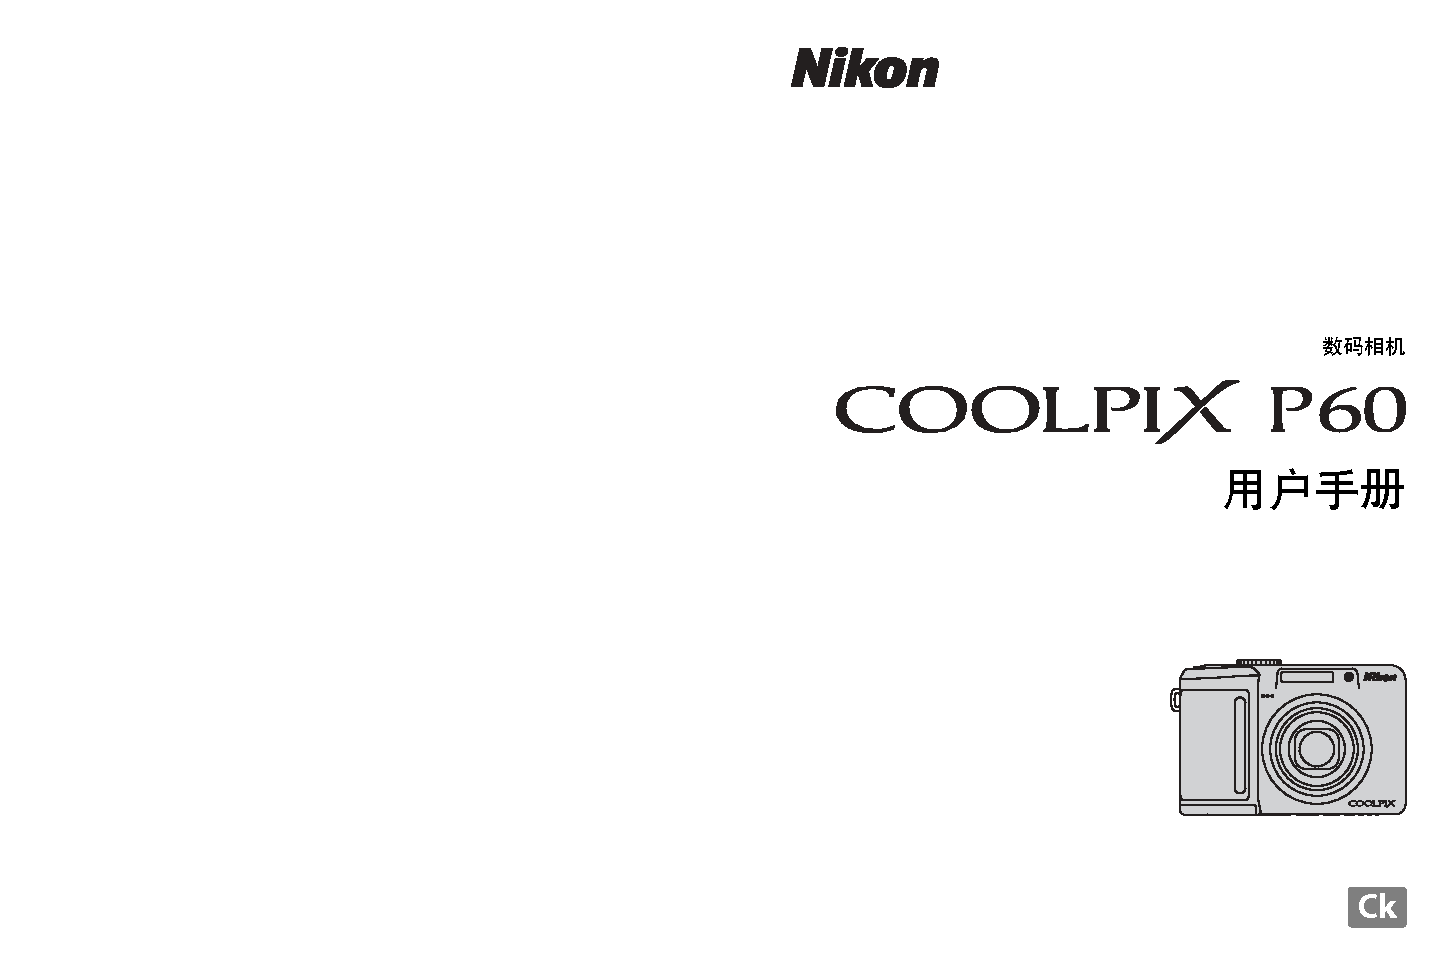 尼康 Nikon COOLPIX P60 用户指南 封面